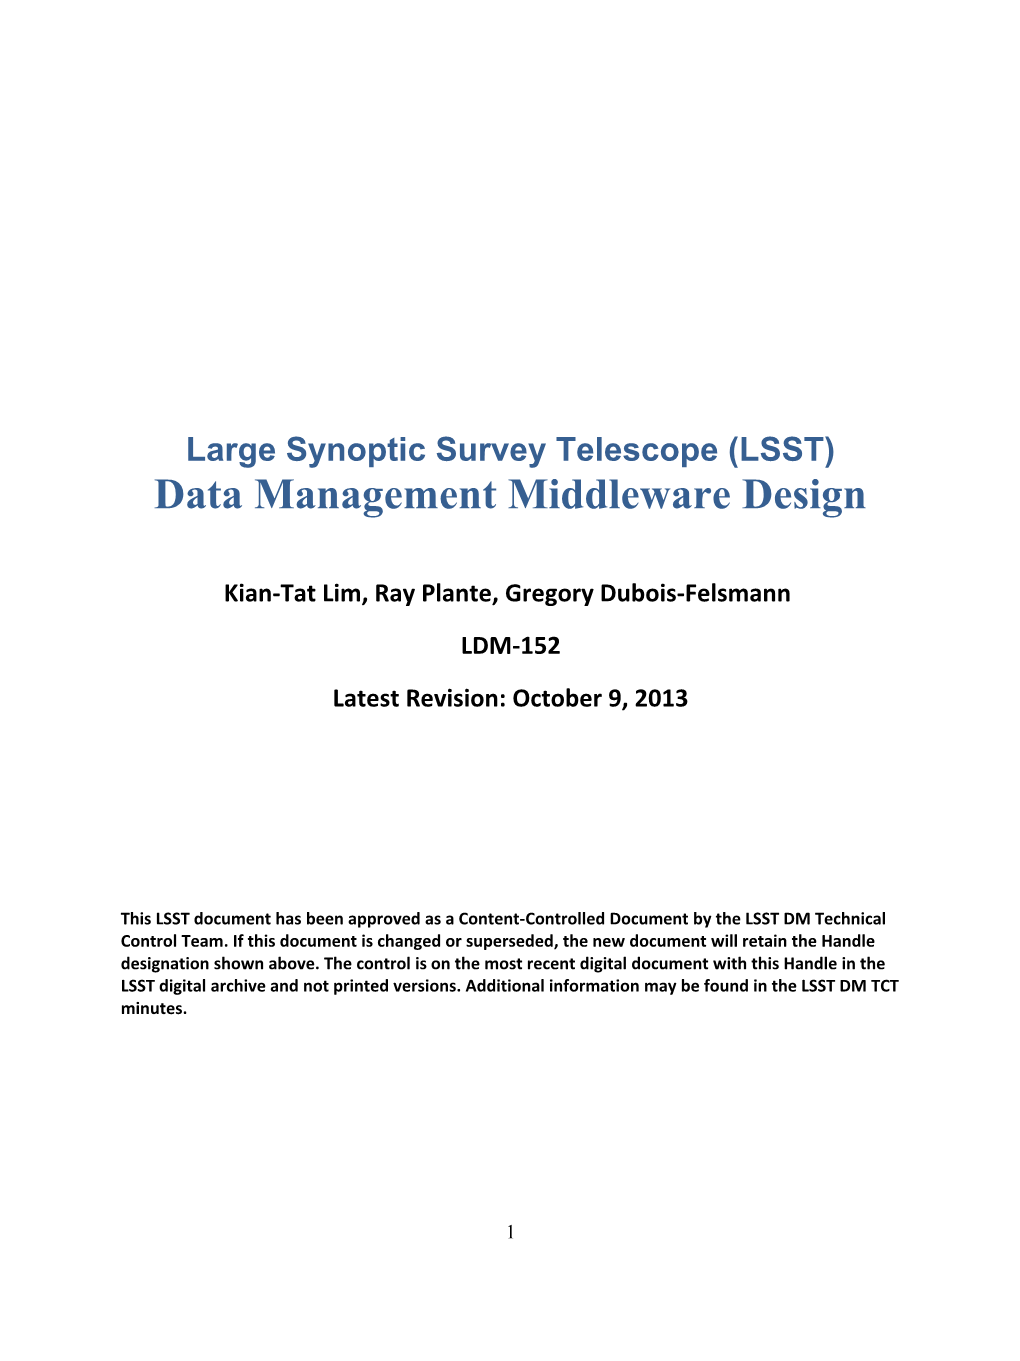 LSST Data Management Middleware Design LDM-152 10/04/2011